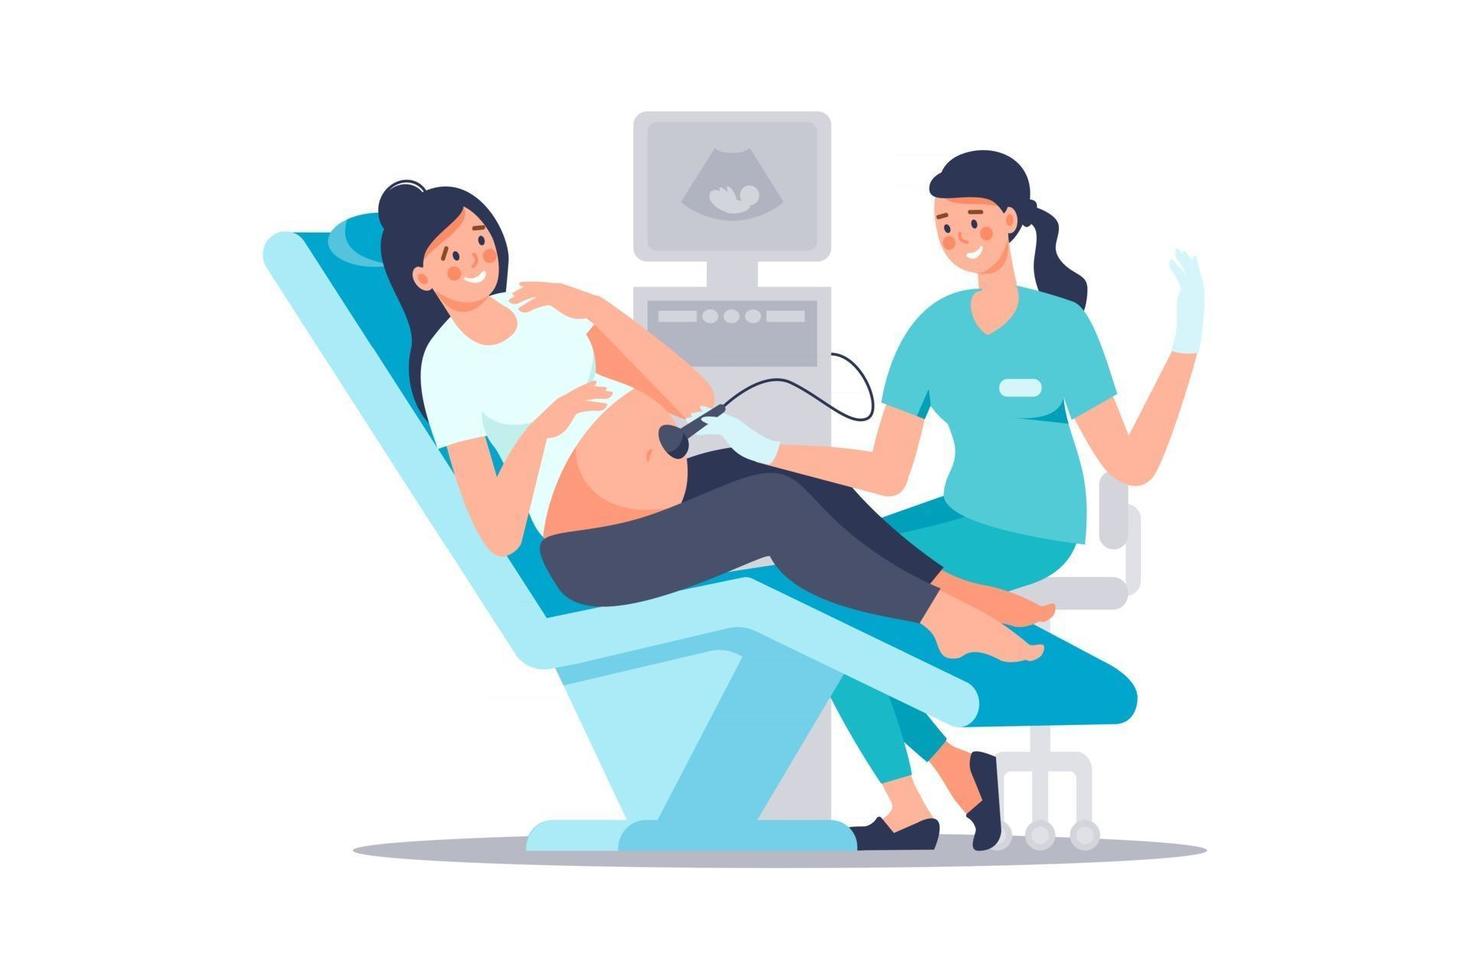 échographiste scannant et examinant une femme enceinte dans un cabinet médical hospitalier. examen pendant la grossesse. concept d'échographie médicale. heureuse future mère à l'examen médical. vecteur